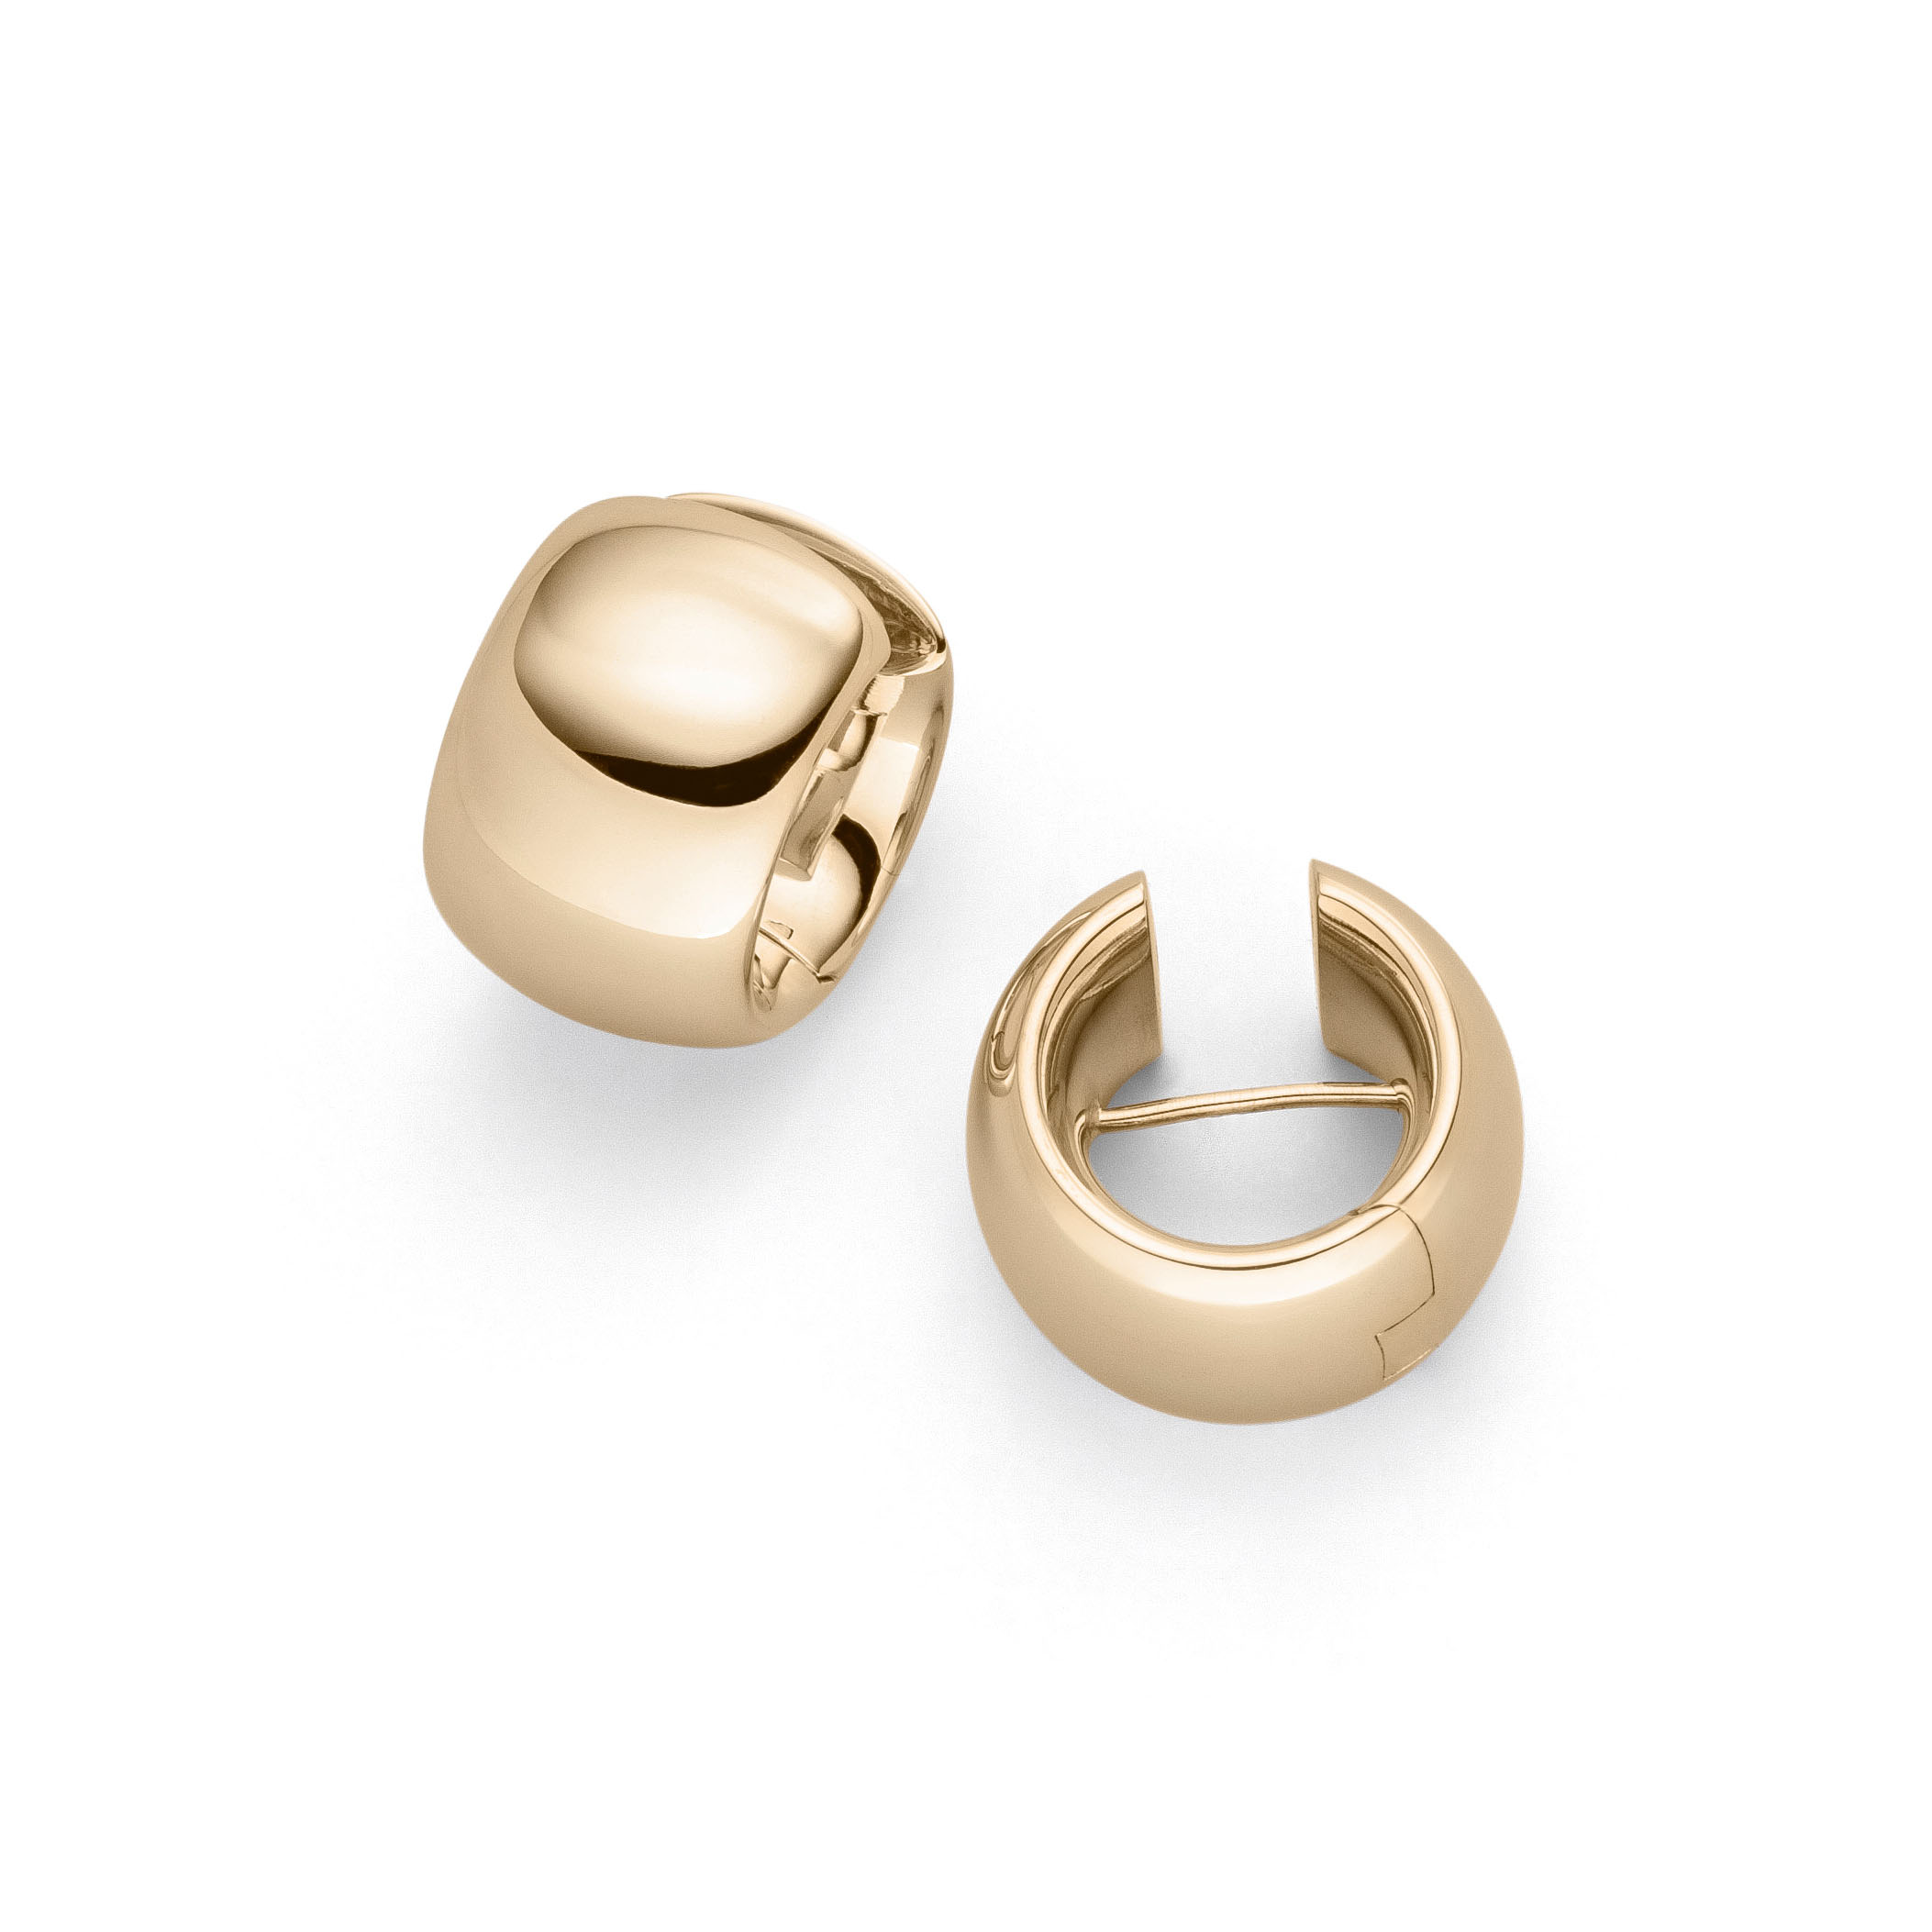 Großhandel OEM/ODM Schmuck Kundenspezifische vergoldete Silberohrringe Ohrstecker Goldpolierte Ohrringe mit Garantie